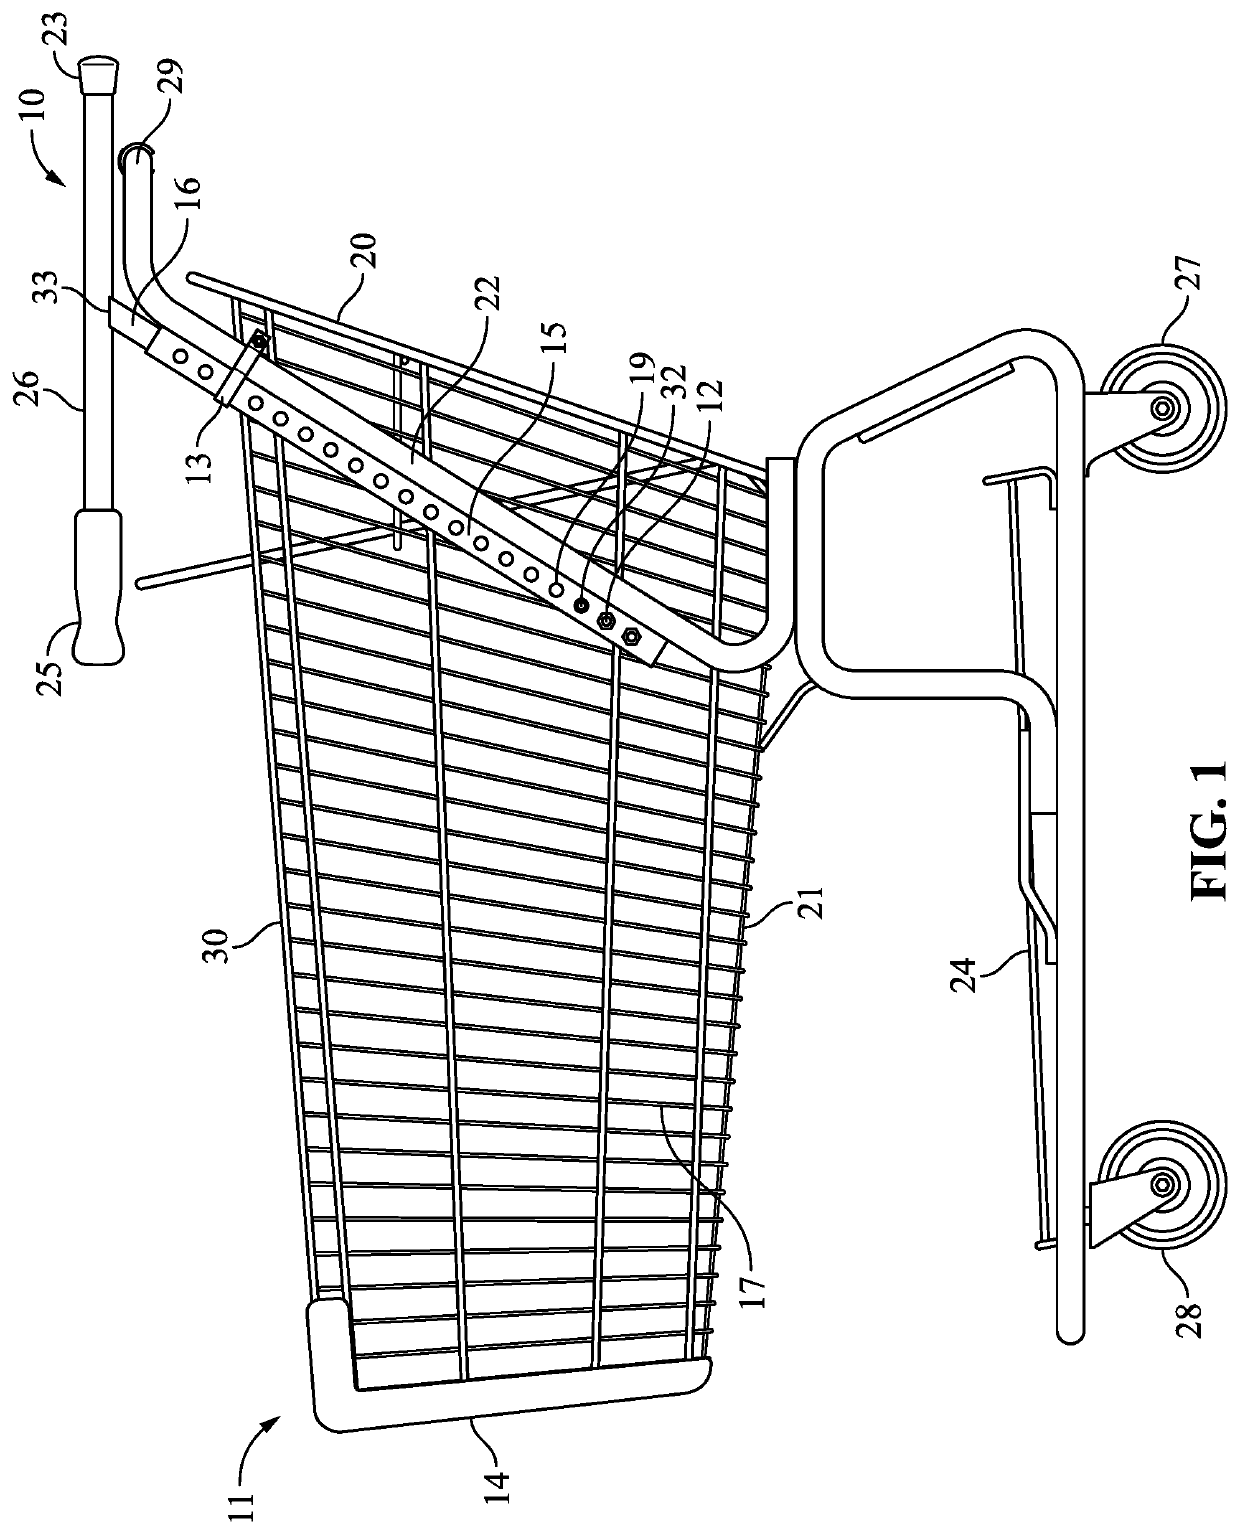 Shopping cart assist handles